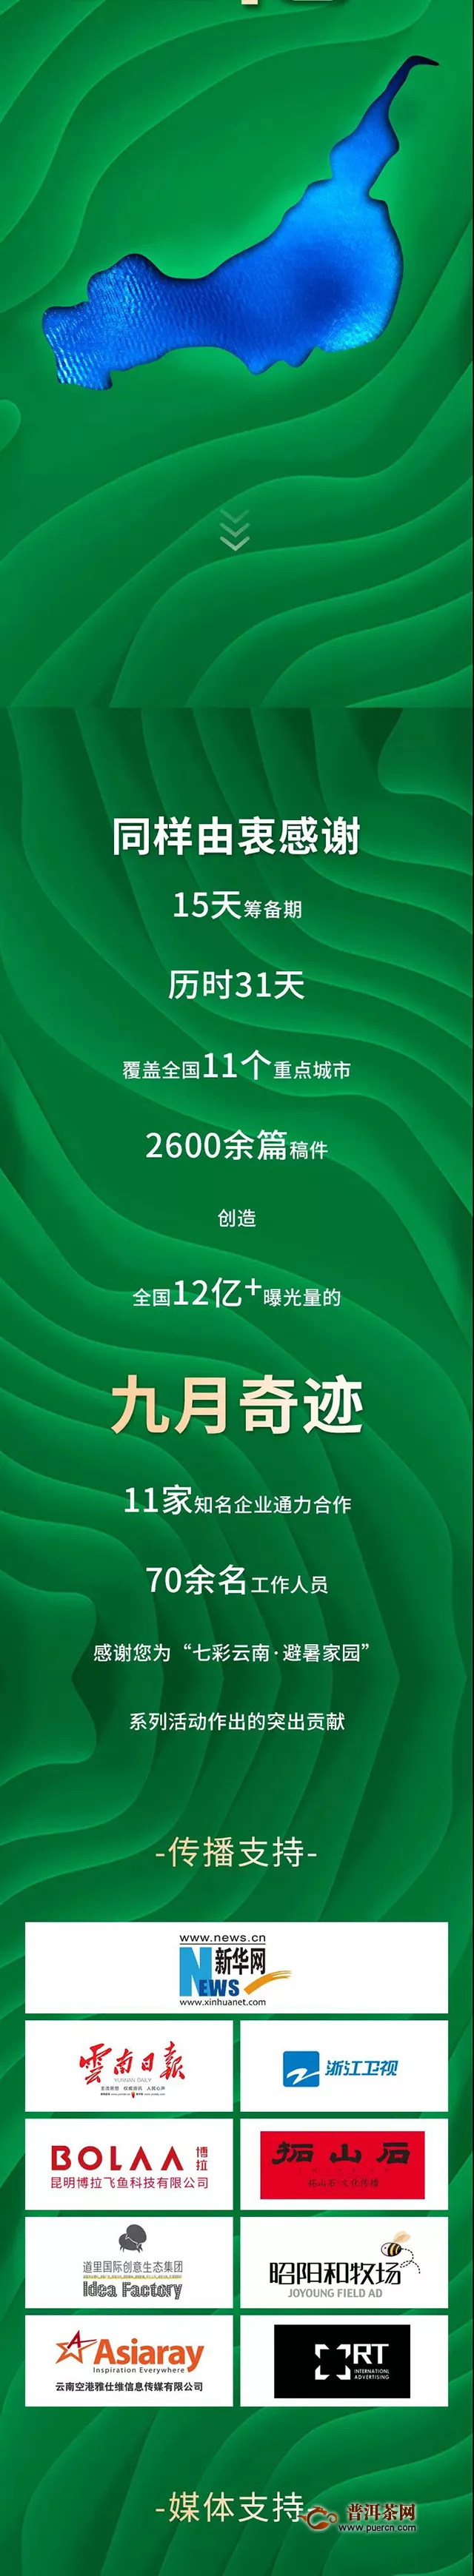 热烈庆祝！七彩云南®·避暑家园系列活动全国曝光12亿+！